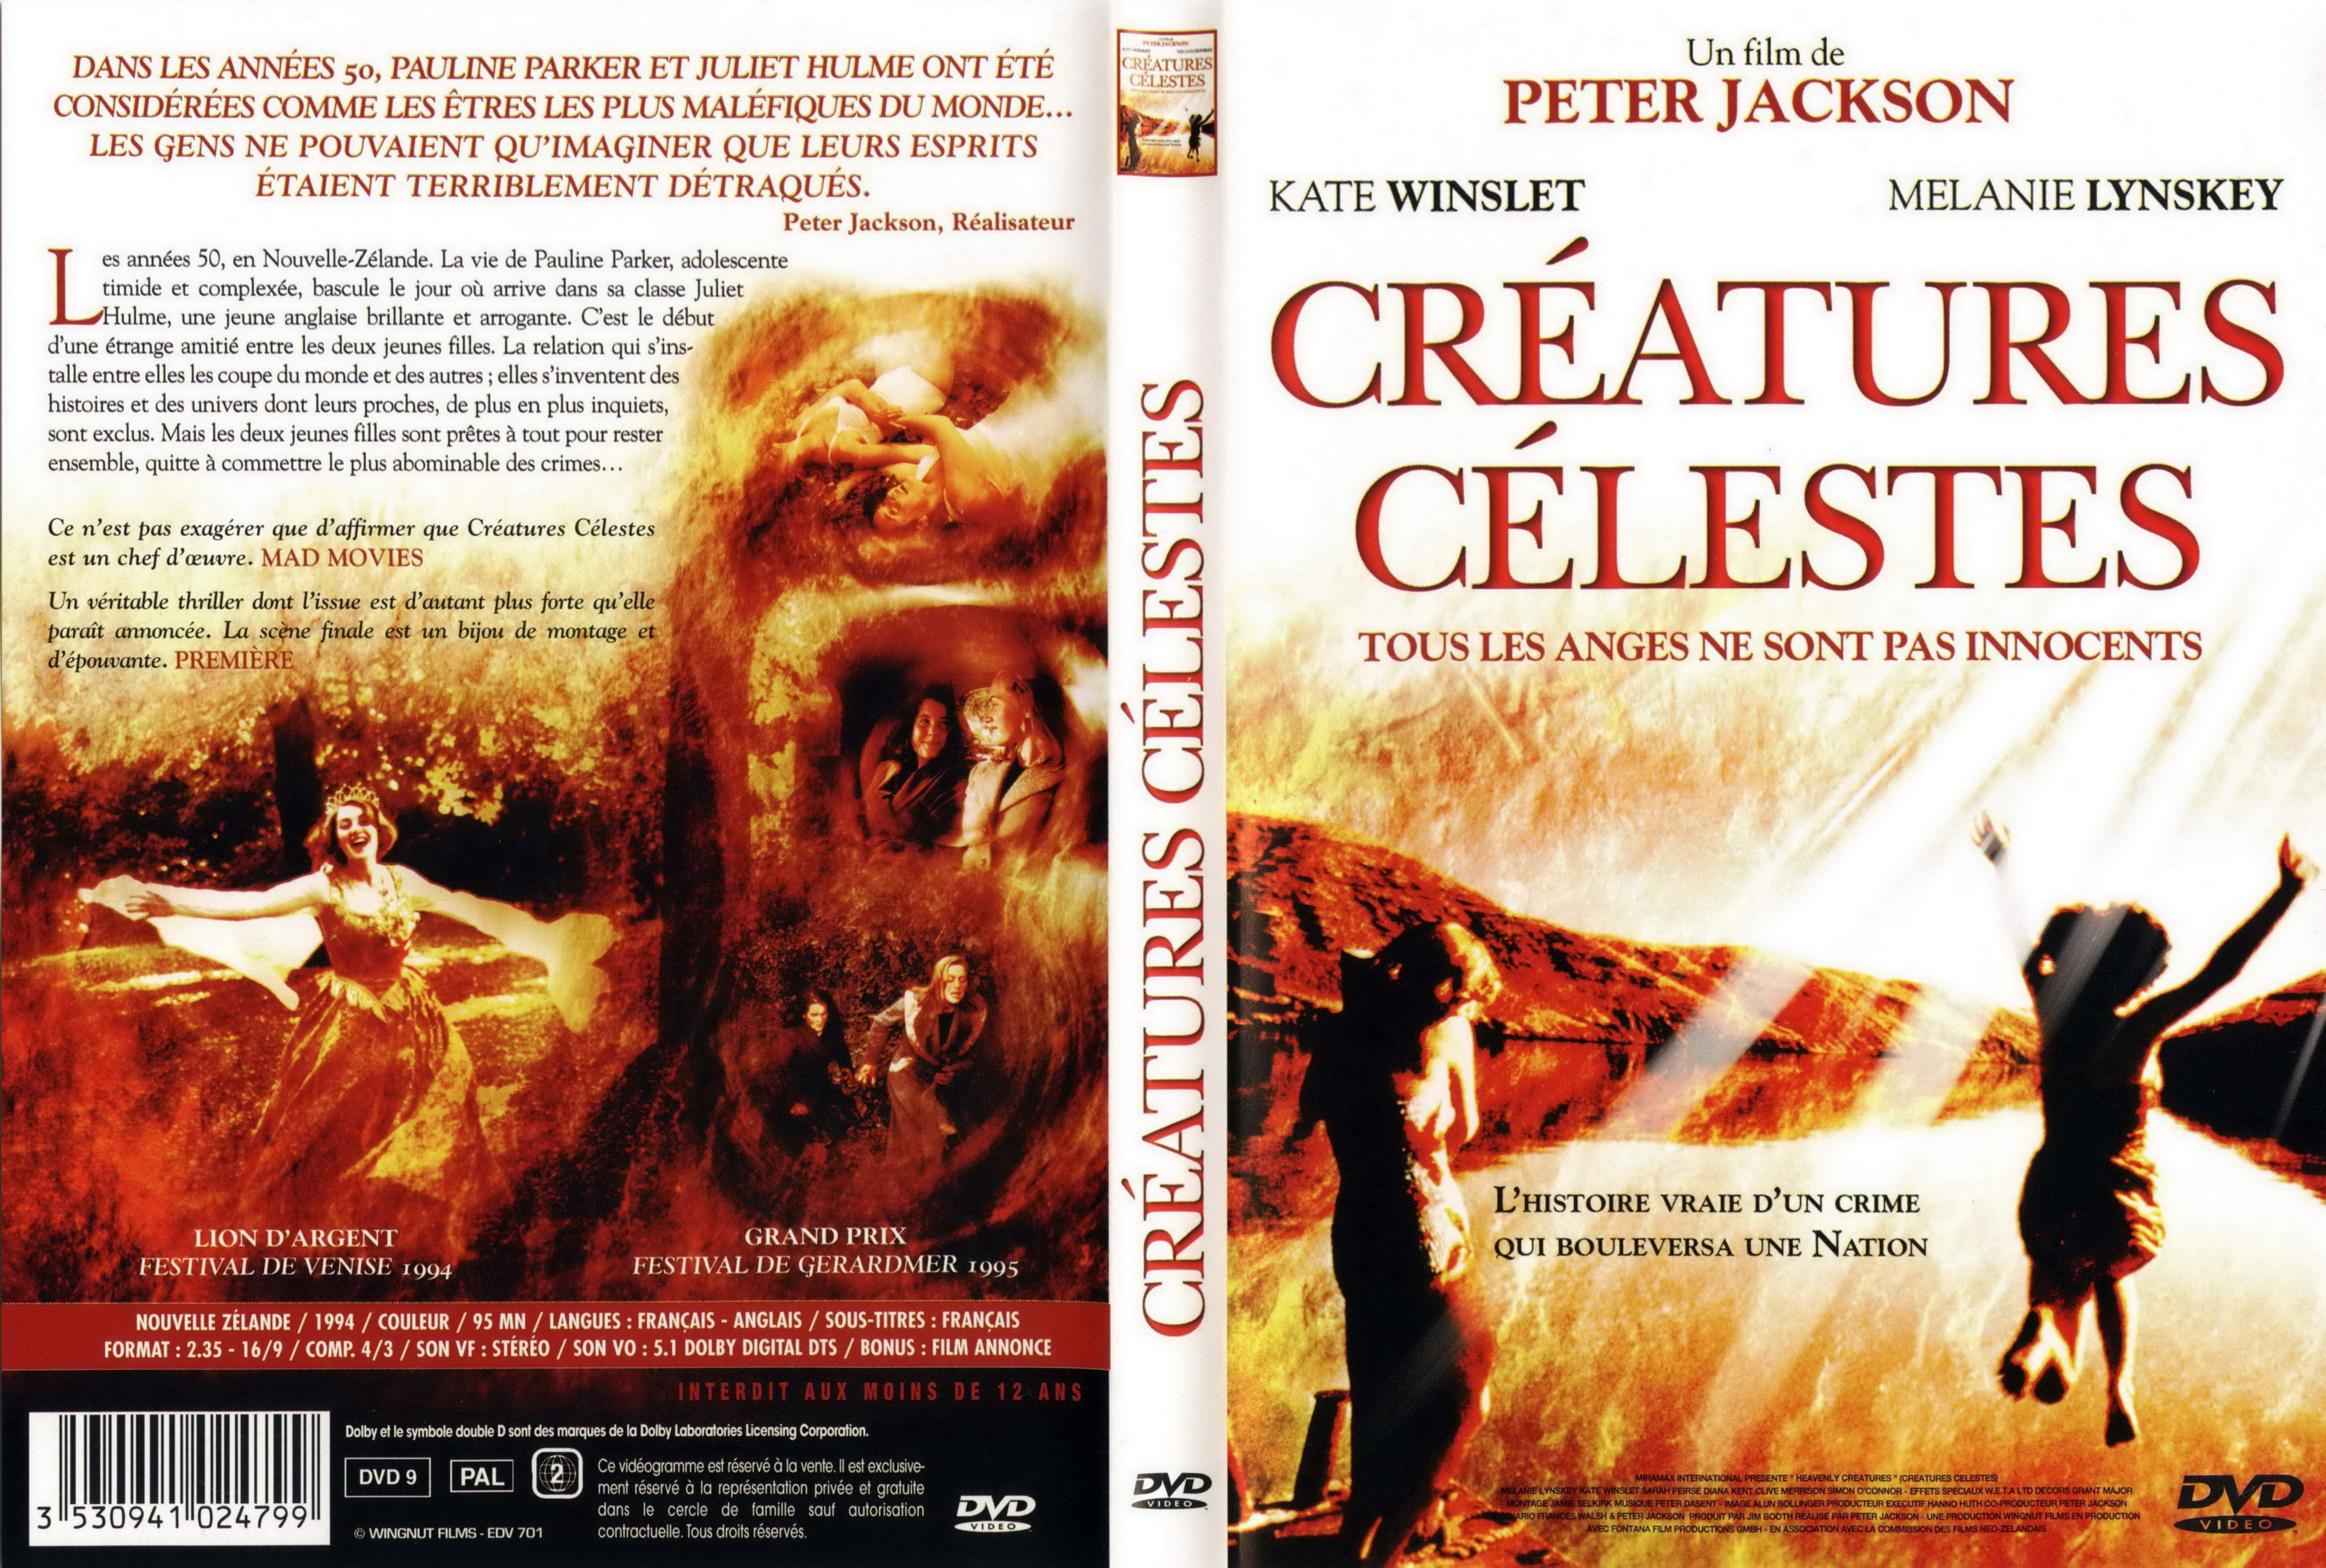 Jaquette DVD Creatures clestes